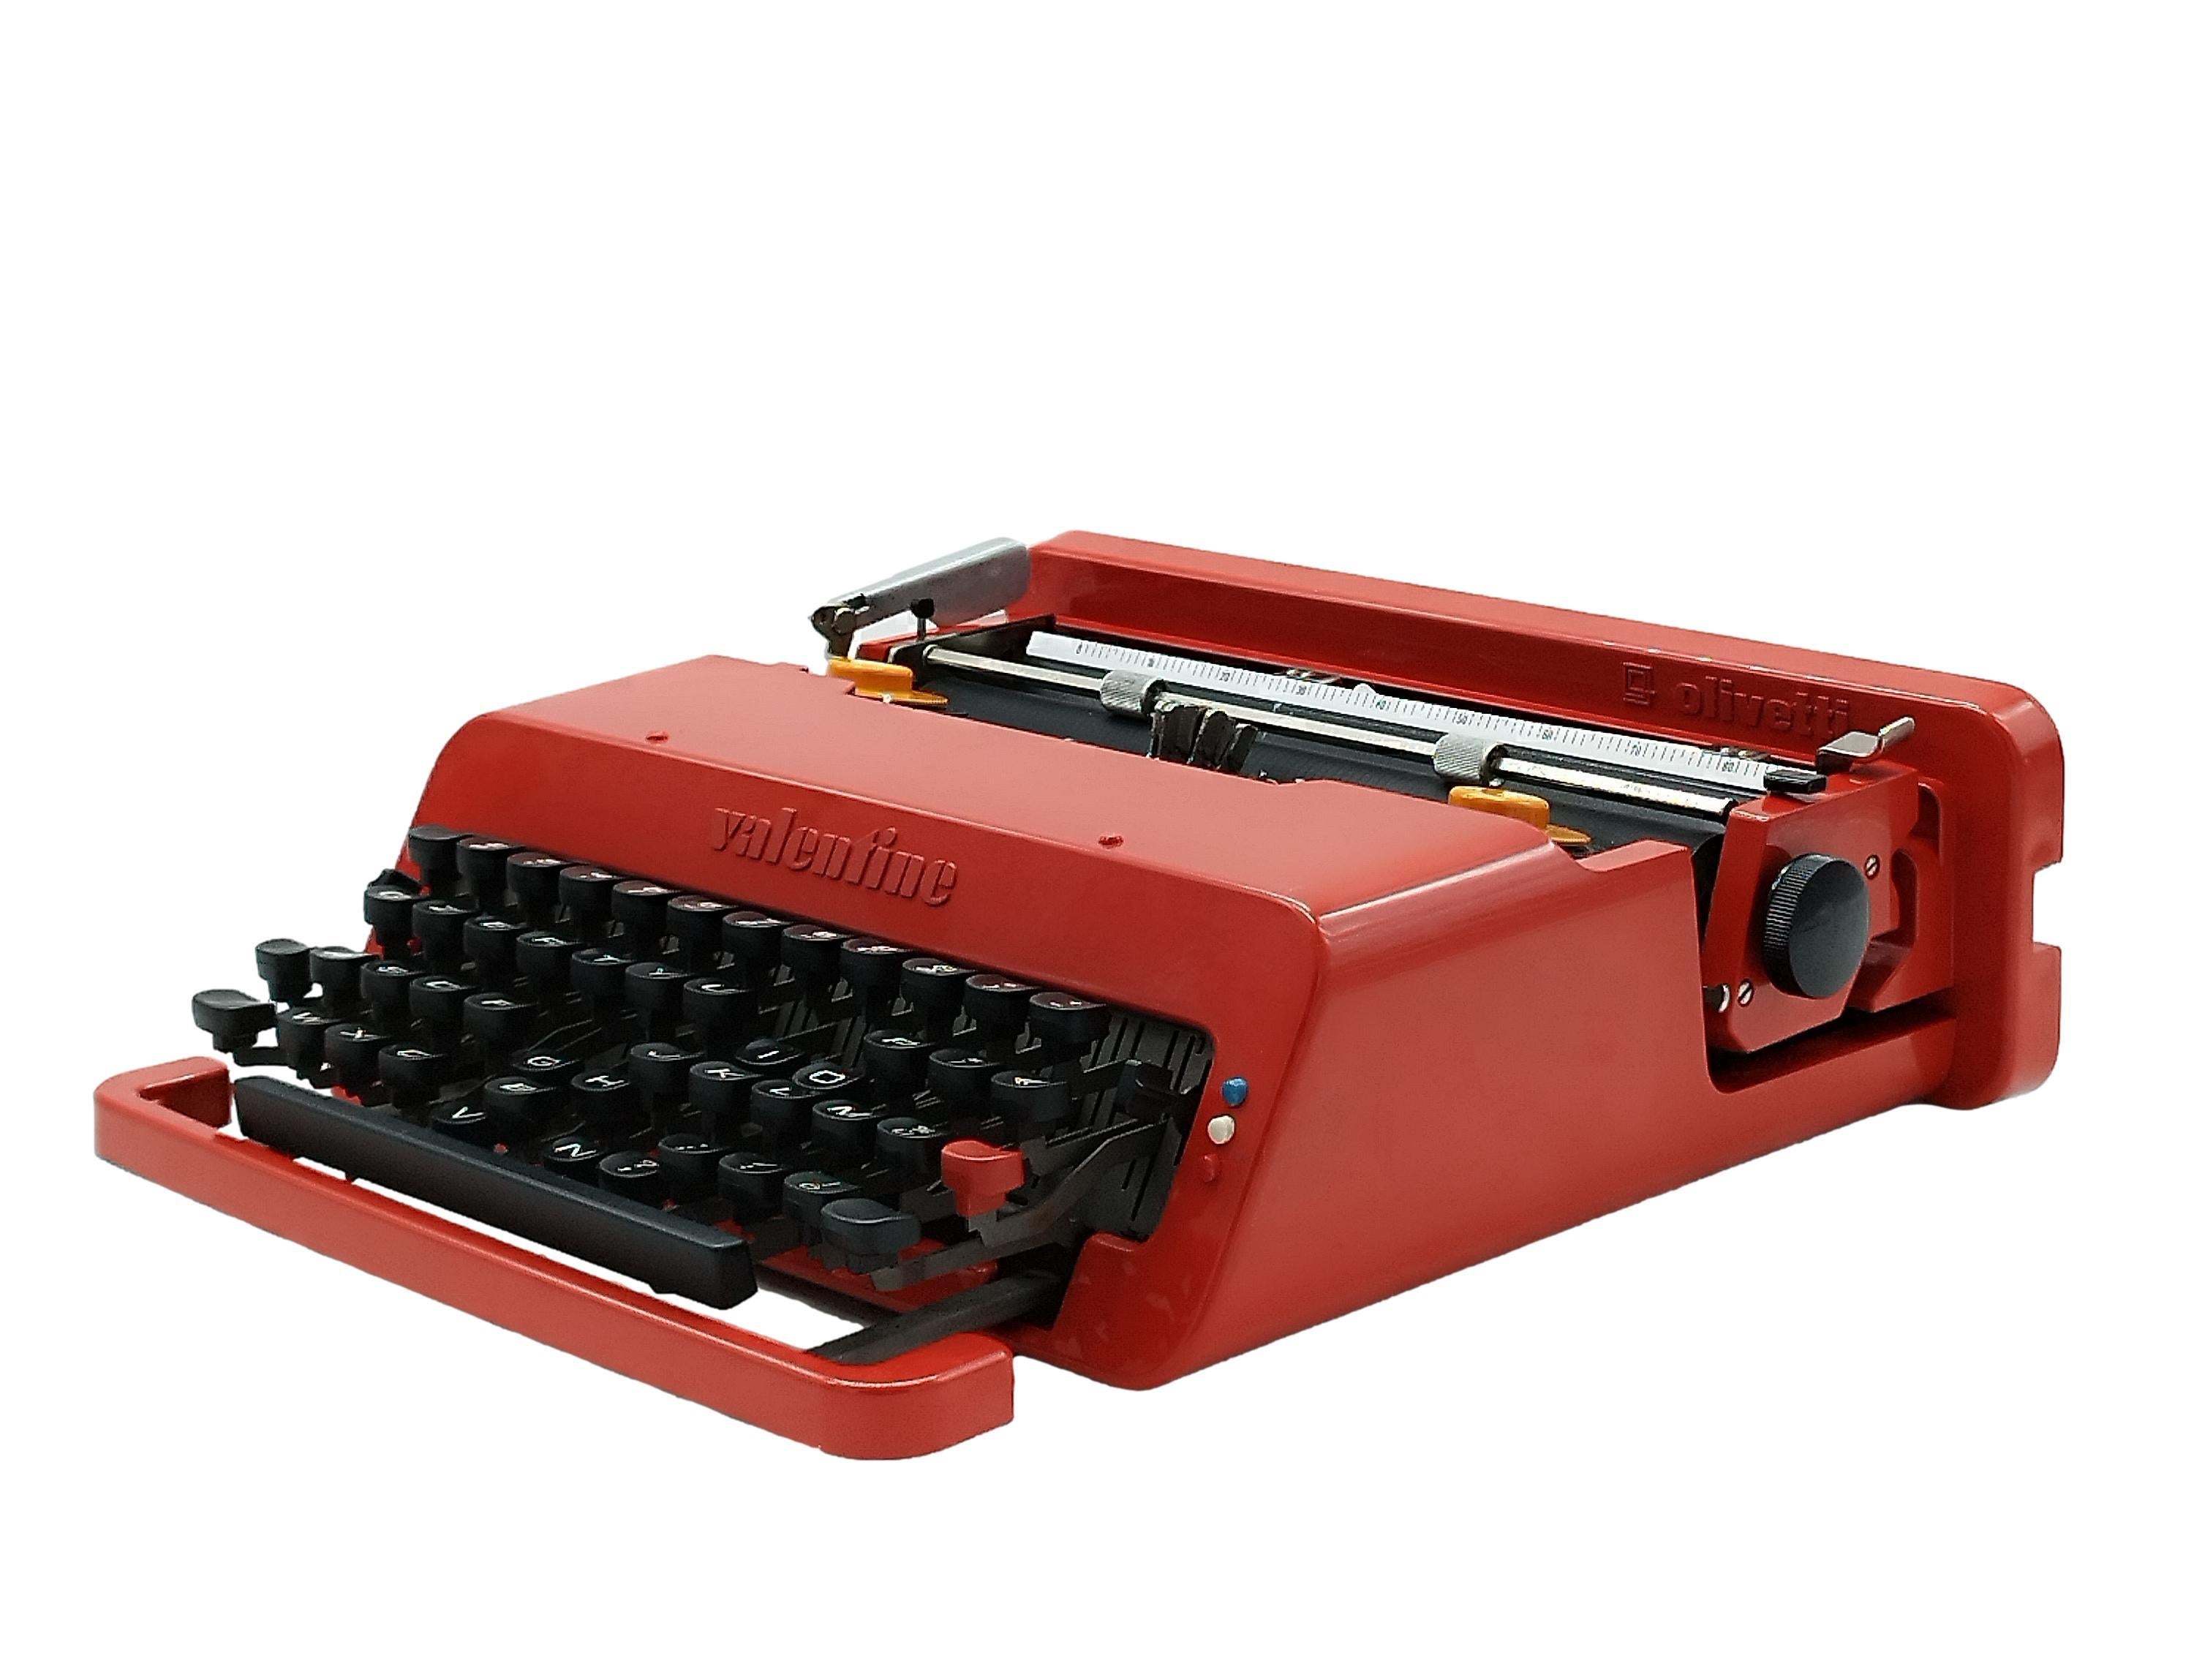 Célèbre et iconique machine à écrire portable Mod. Conçue par Ettore Sottsass et Peter King, pour la société Olivetti Italia en 1960, la machine à écrire est en très bon état avec son étui auquel il manque toutefois les attaches (comme on peut le